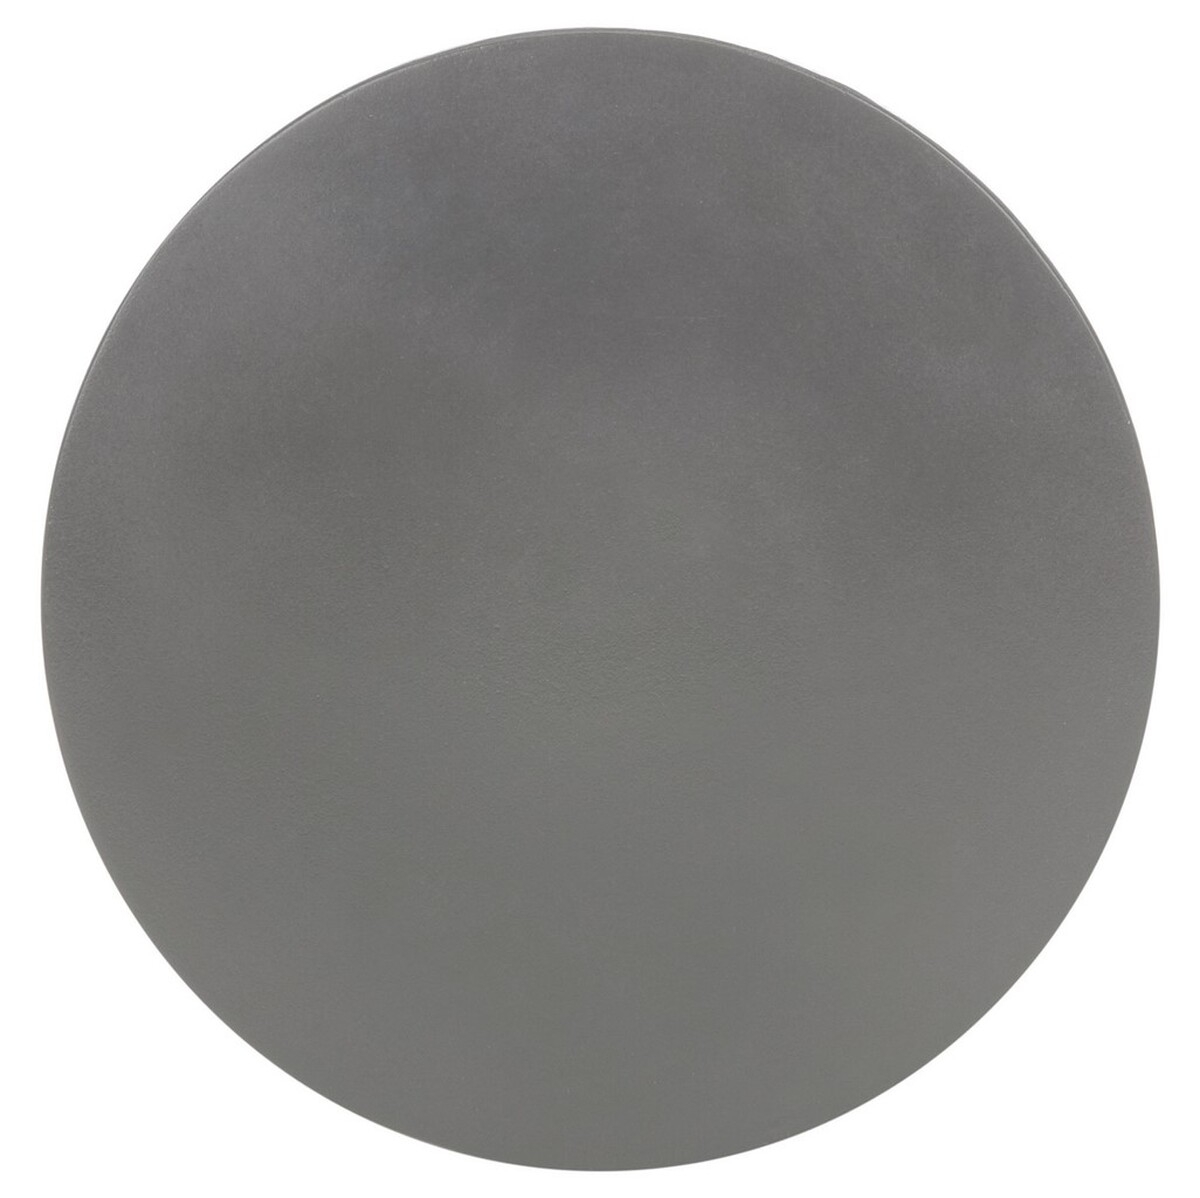 Athena Indoor/Outdoor Modern Concrete Round 17.7-Inch H Accent Table - Dark Grey - Safavieh - Image 4